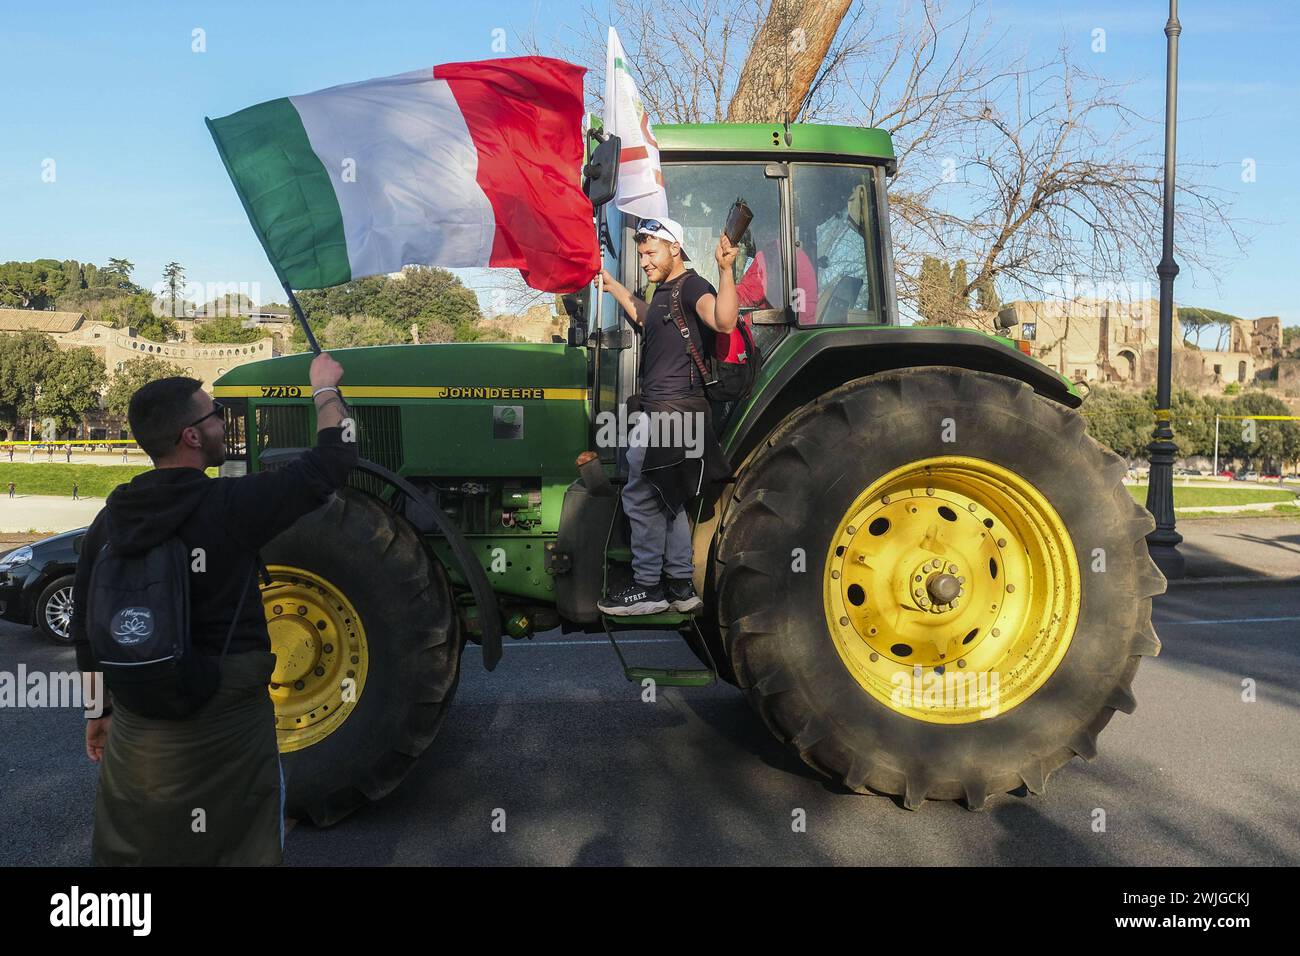 Notizie - dimostrazioni degli agricoltori a Roma gli agricoltori organizzano dimostrazioni in tutta Italia per settimane per chiedere tasse più basse sul carburante, prezzi migliori per i loro prodotti, e un allentamento delle normative ambientali dell'UE che, secondo loro, rendono più difficile competere con prodotti stranieri meno costosi. Oggi, 15 febbraio 2024, si sono riuniti in una manifestazione nazionale a roma al circo massimo e al campidoglio.& XA Roma Italia Copyright: XAntonioxBalascox/xLiveMediax LPN 1237672 Foto Stock